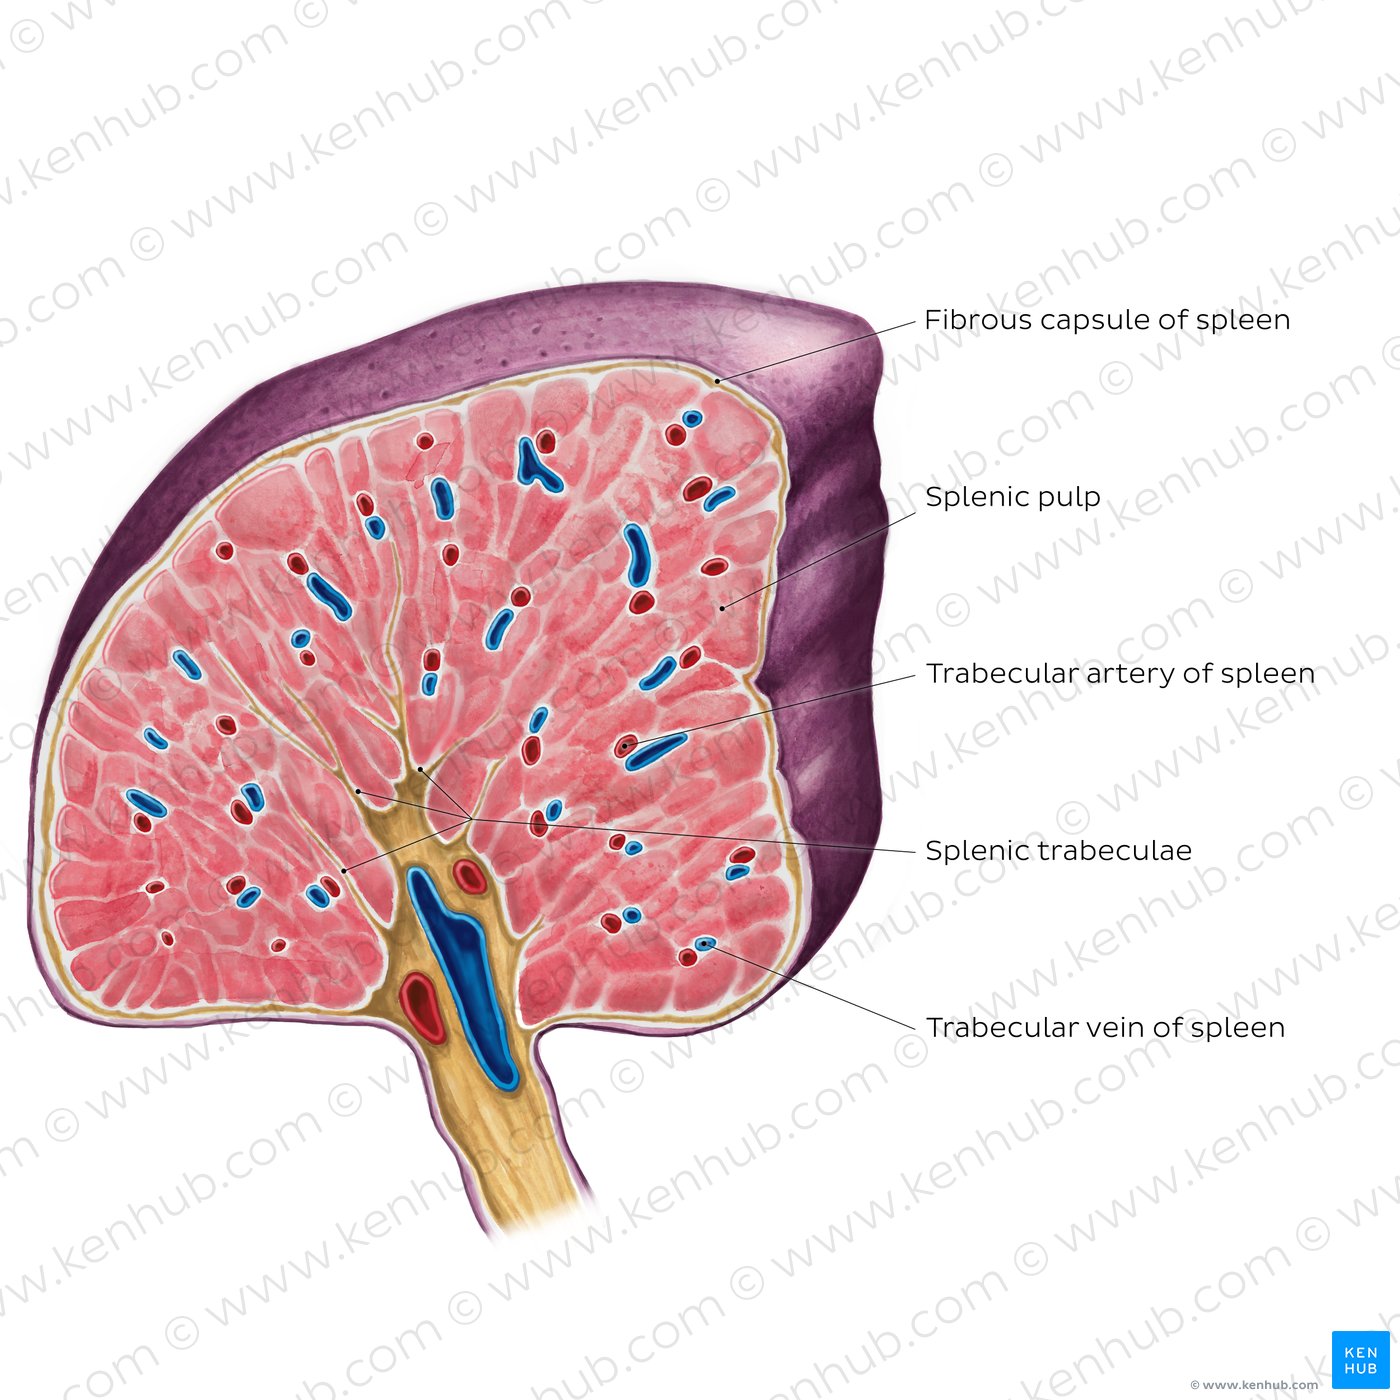 Cross section of the spleen